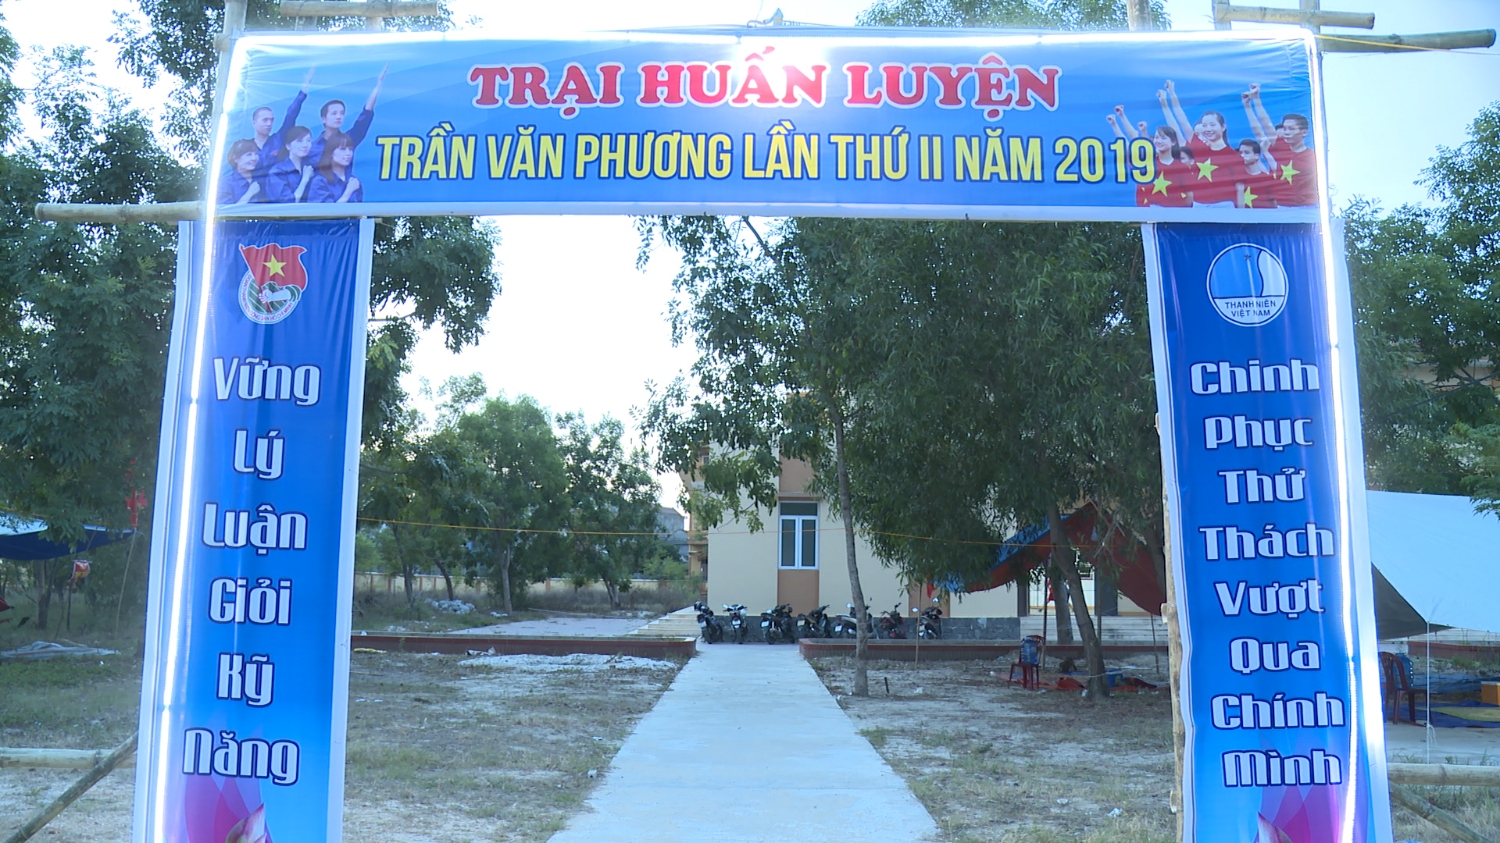 Thị đoàn Ba Đồn tổ chức trại huấn luyện Trần Văn Phương lần thứ II, năm 2019. ​​​​​​​